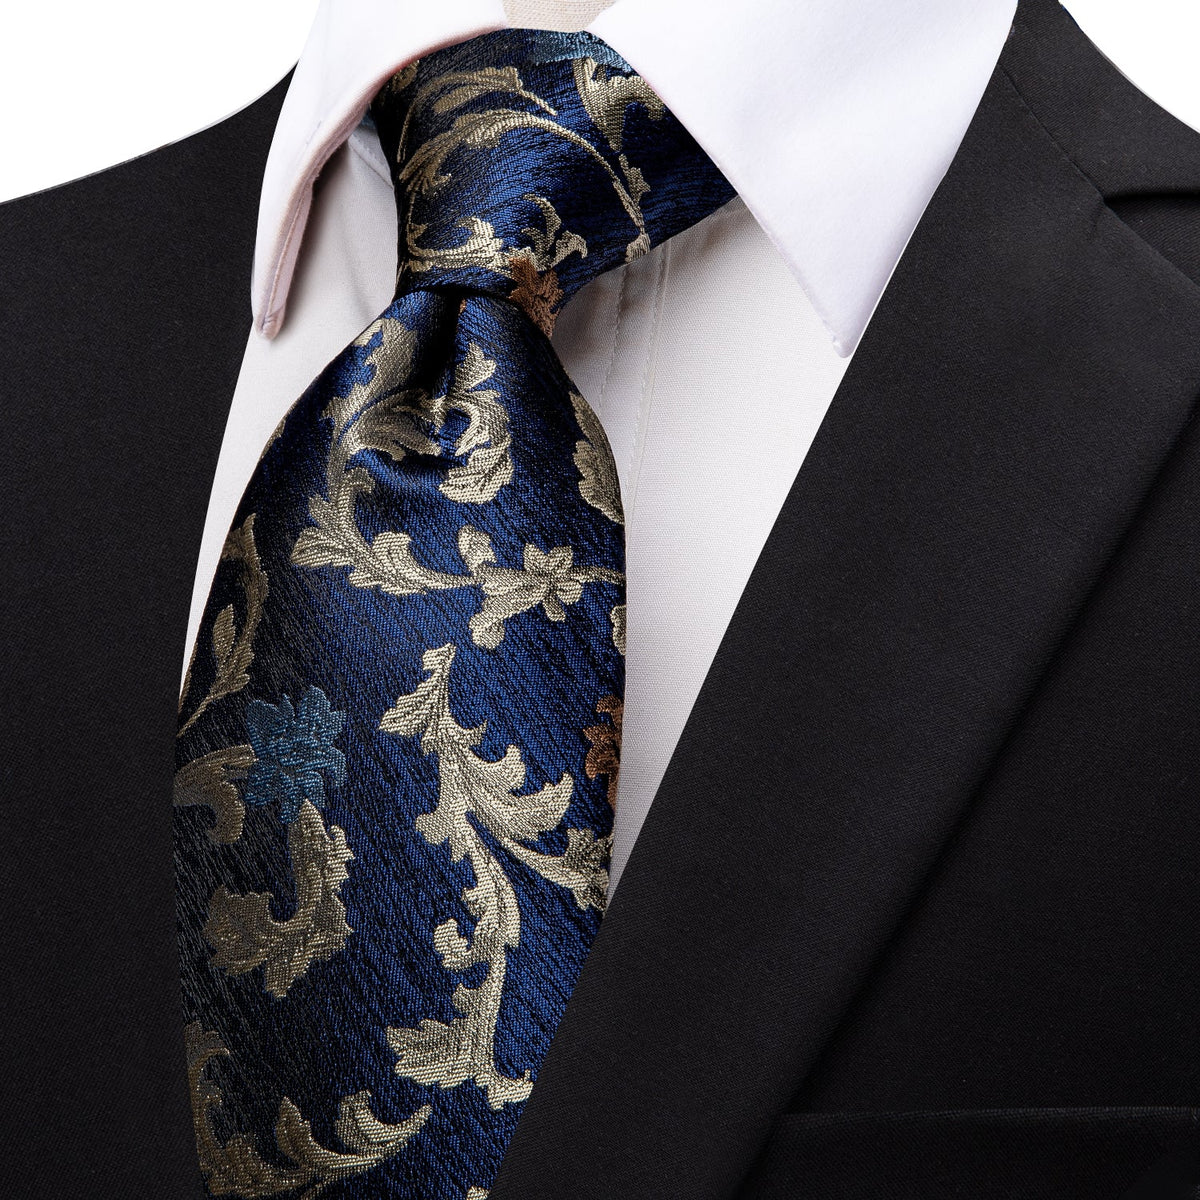 black suite white shirt blue tie 